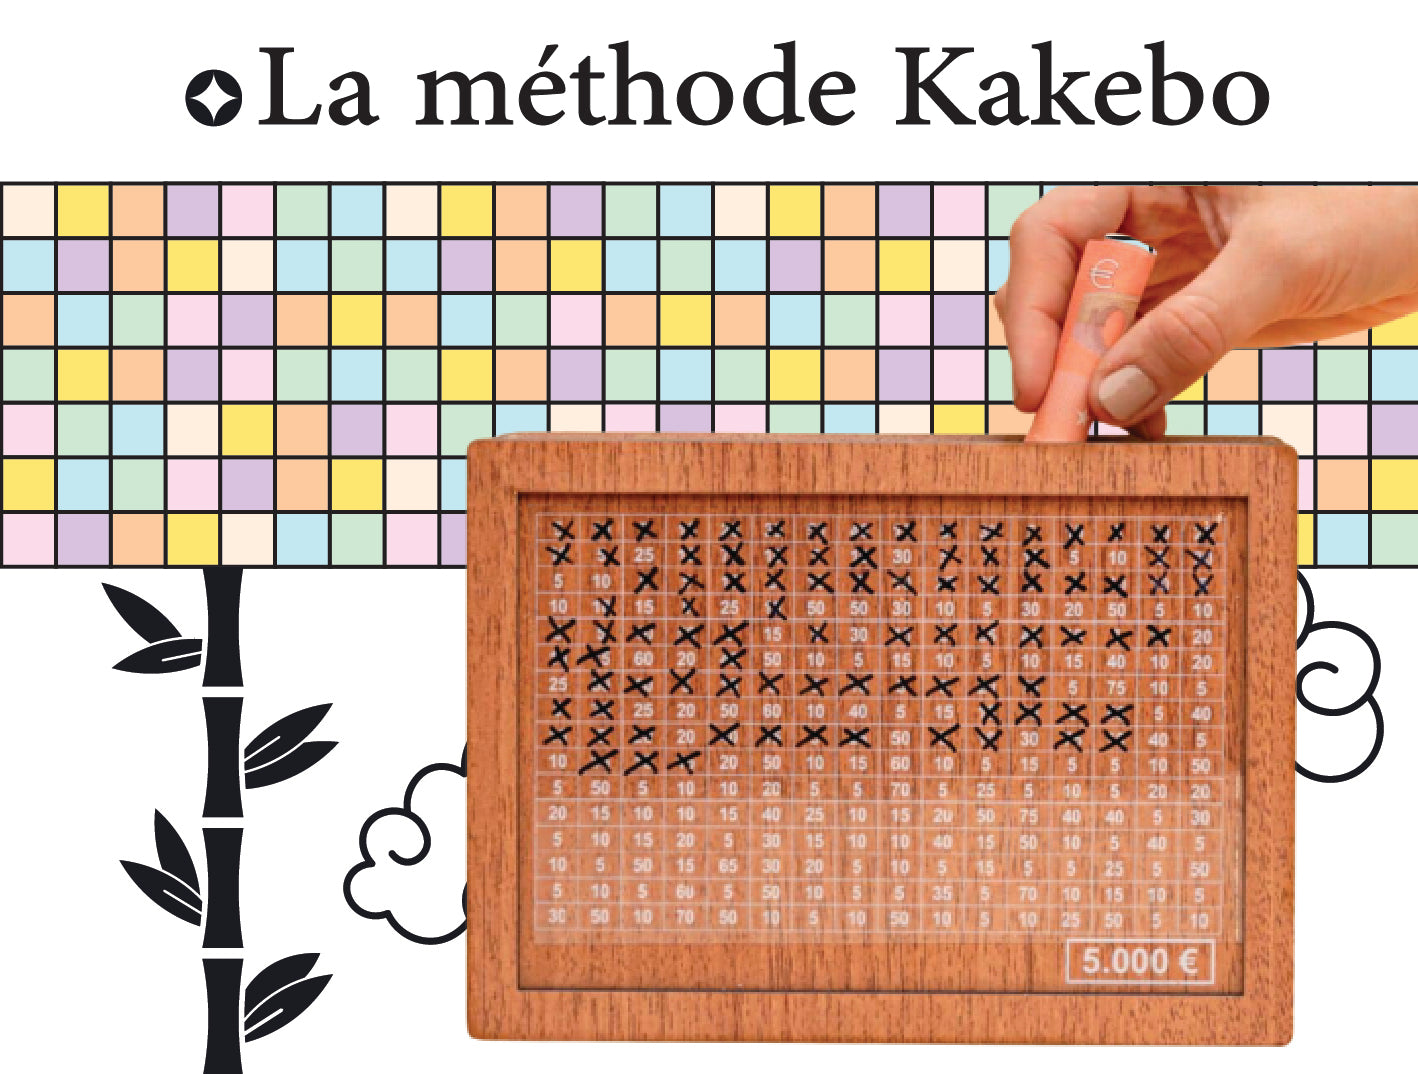 Tirelire Kakebo – Optimisez Votre Épargne avec Style et Simplicité!